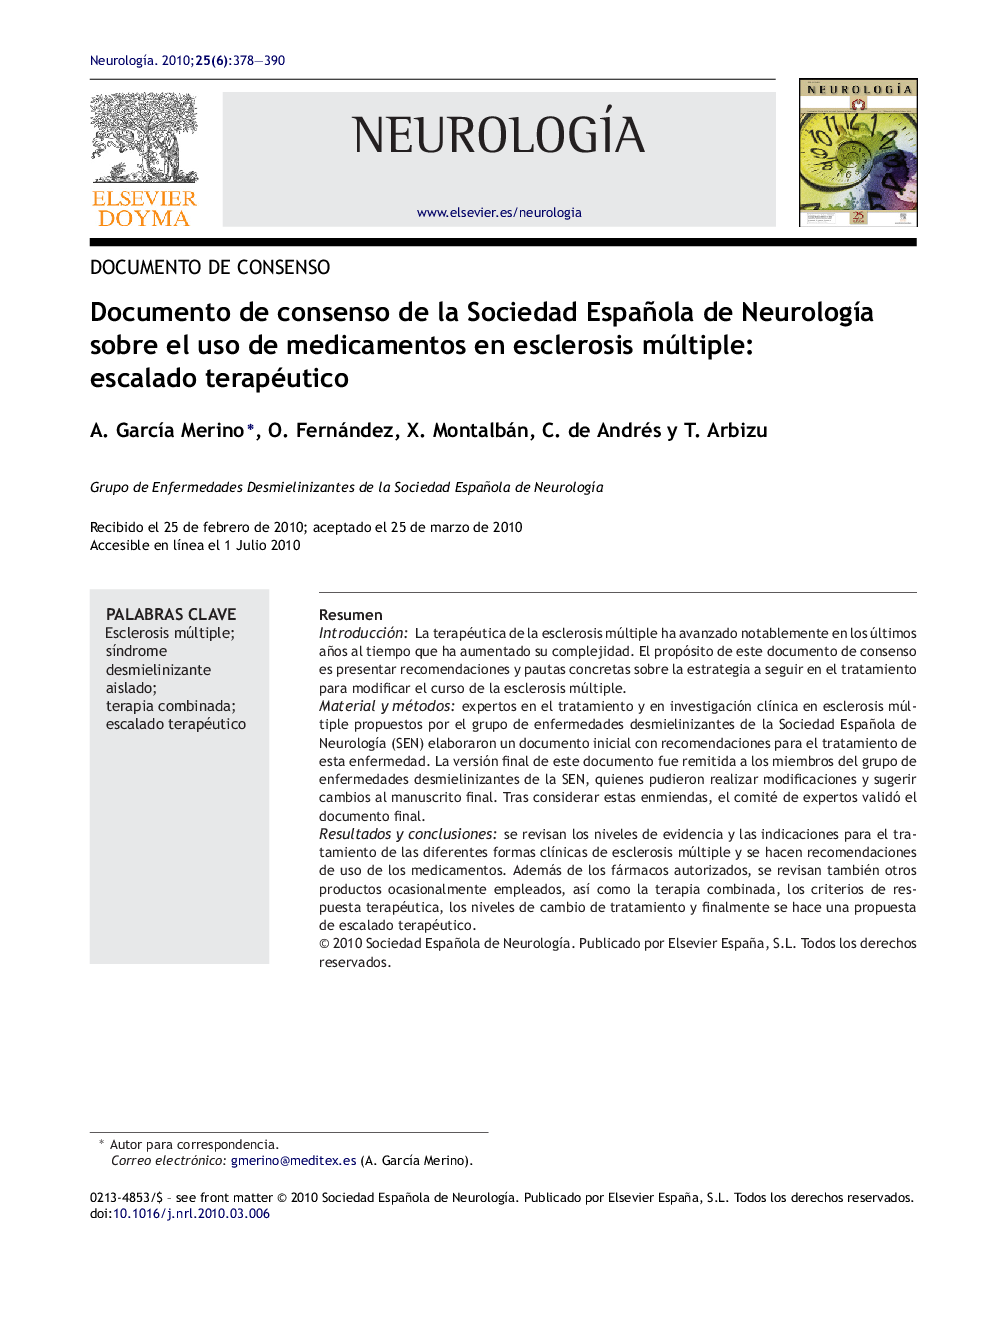 Documento de consenso de la Sociedad Española de NeurologÃ­a sobre el uso de medicamentos en esclerosis múltiple: escalado terapéutico